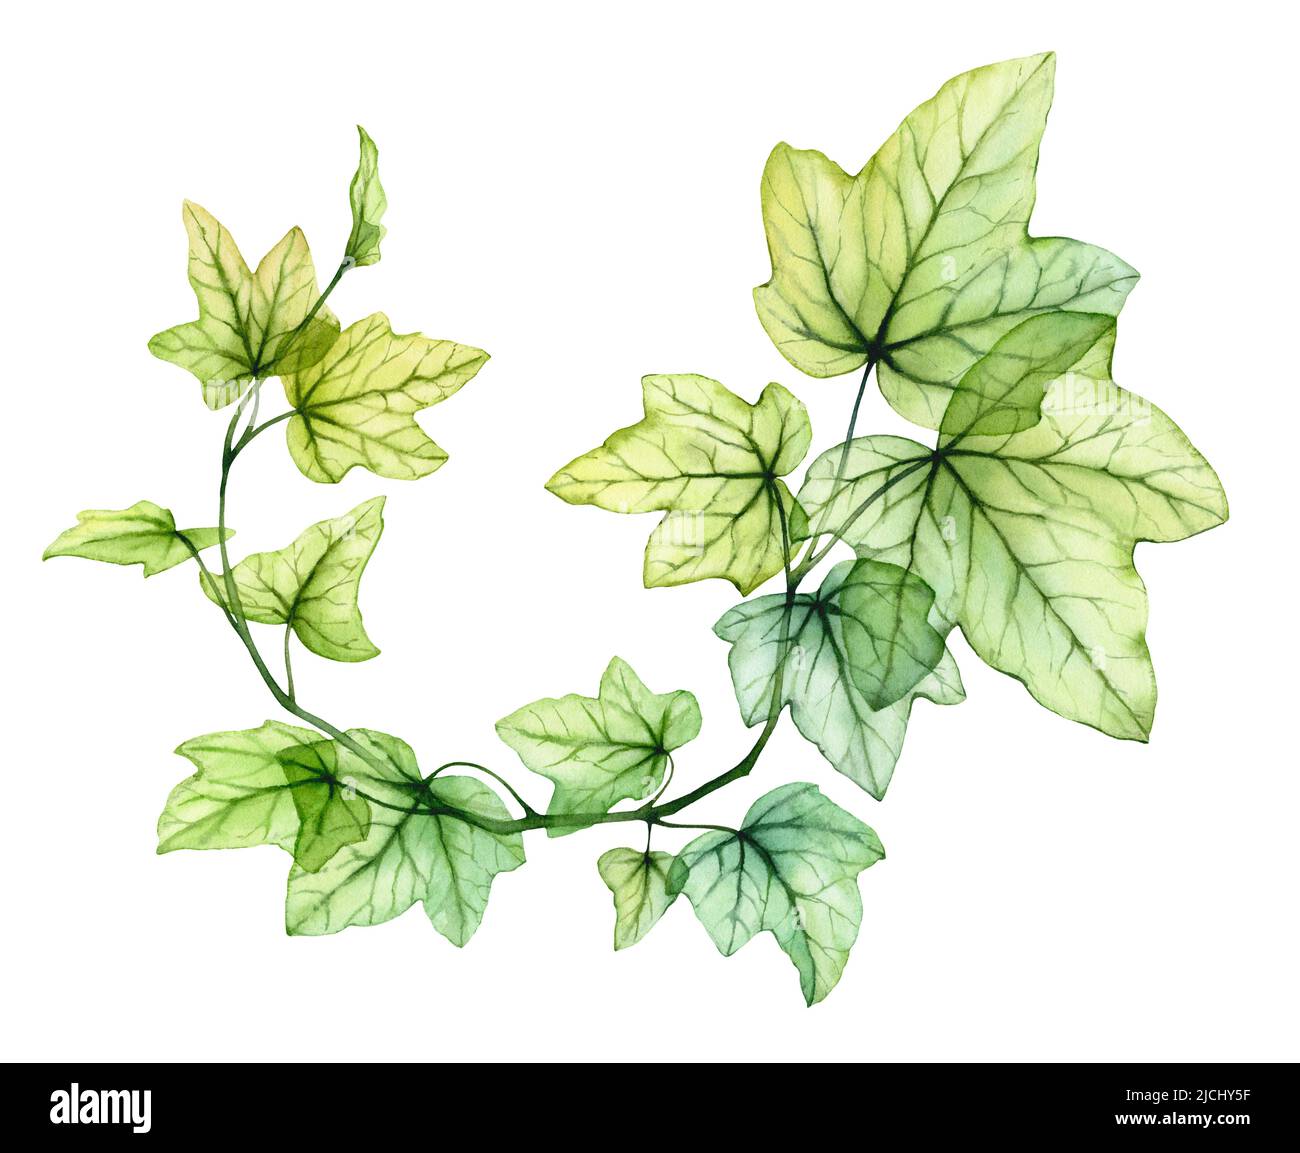 Acquerello foglie trasparenti in forma di corona circolare. Impianto di edera inglese. Fogliame fresco di uva isolato su bianco. Botanica dettagliata e realistica Foto Stock